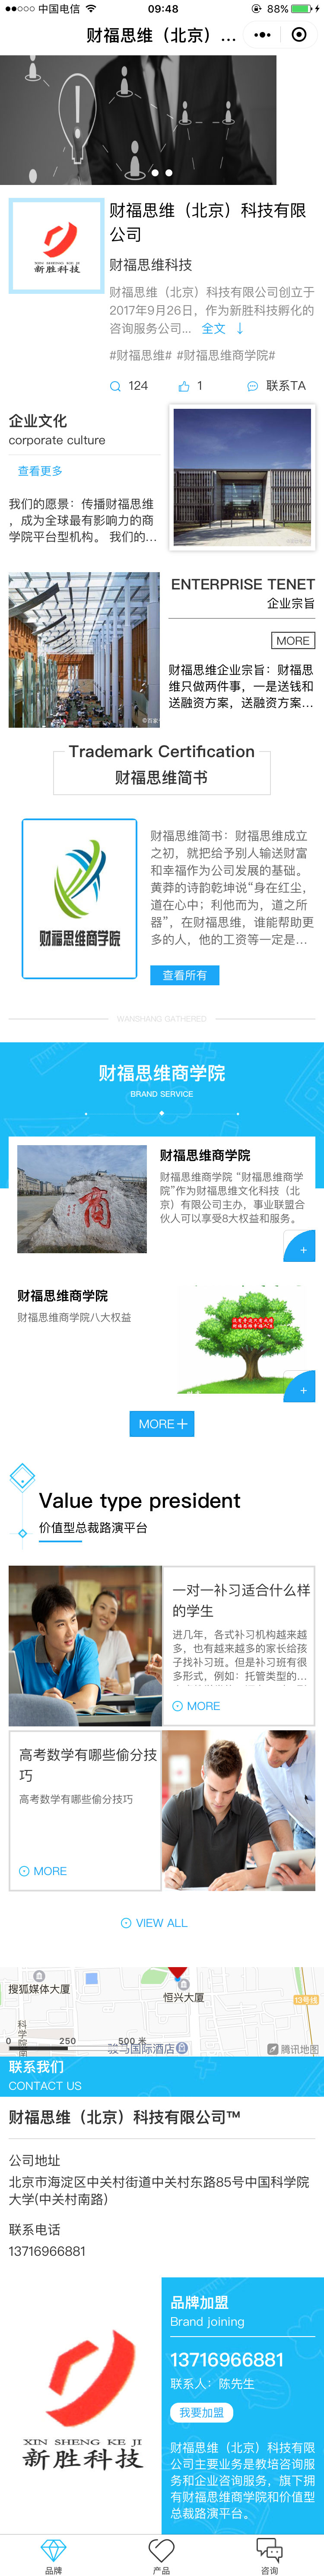 咨询服务蓝色北京-财福思维商标小程序高级版.jpg